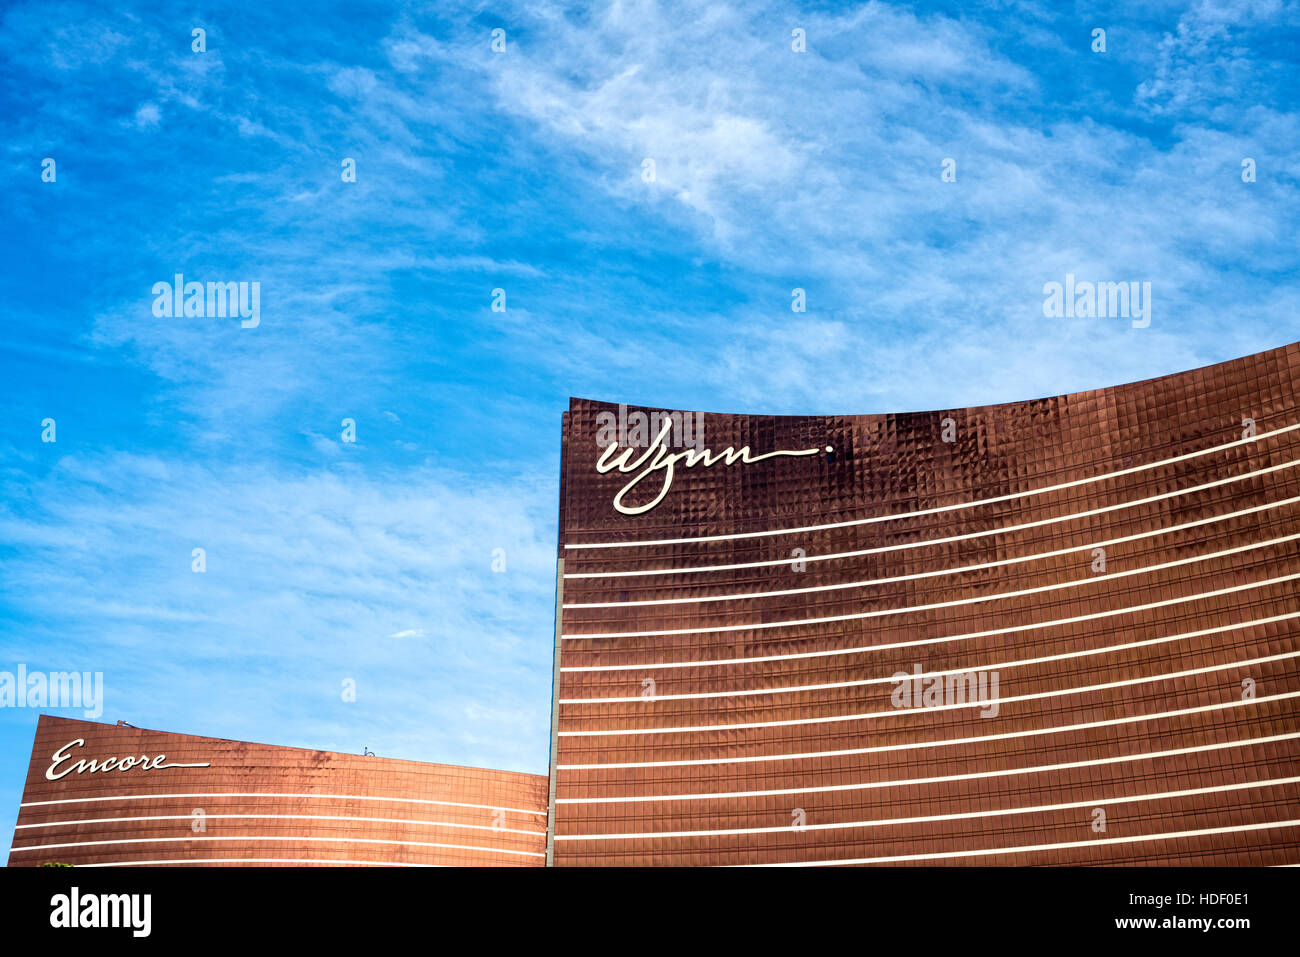 Jusqu'à lors d'une vue partielle de la Consœur Hôtels et casinos, le Wynn et le encore, Las Vegas, NV. USA Banque D'Images